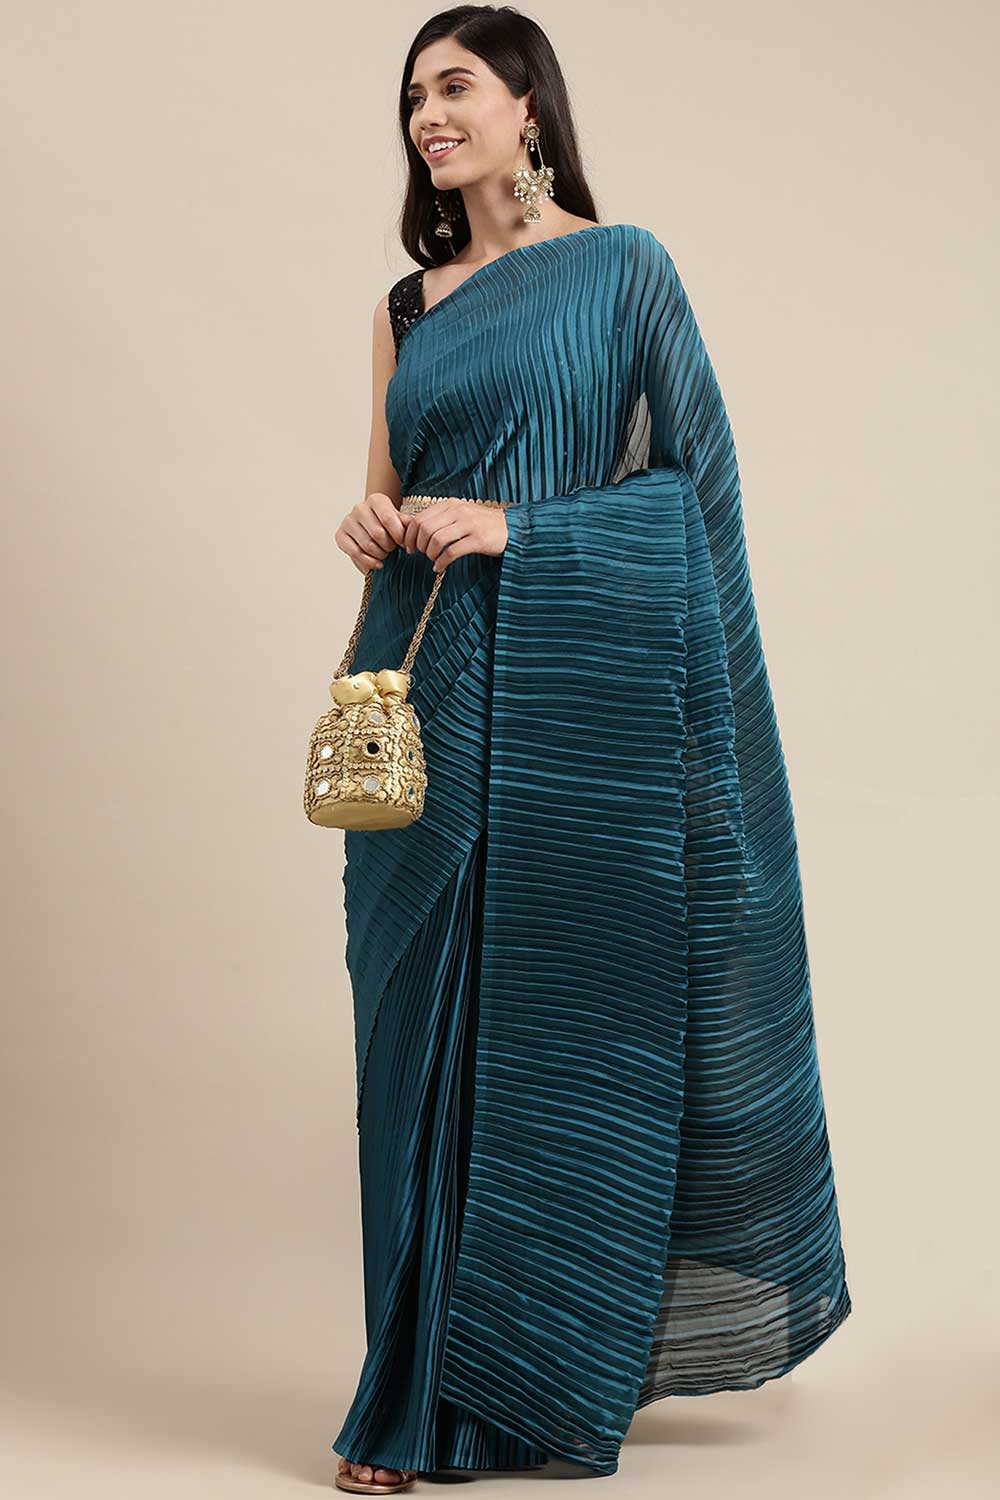 Buy Georgette Solid Saree in Teal blue Online - Zoom In